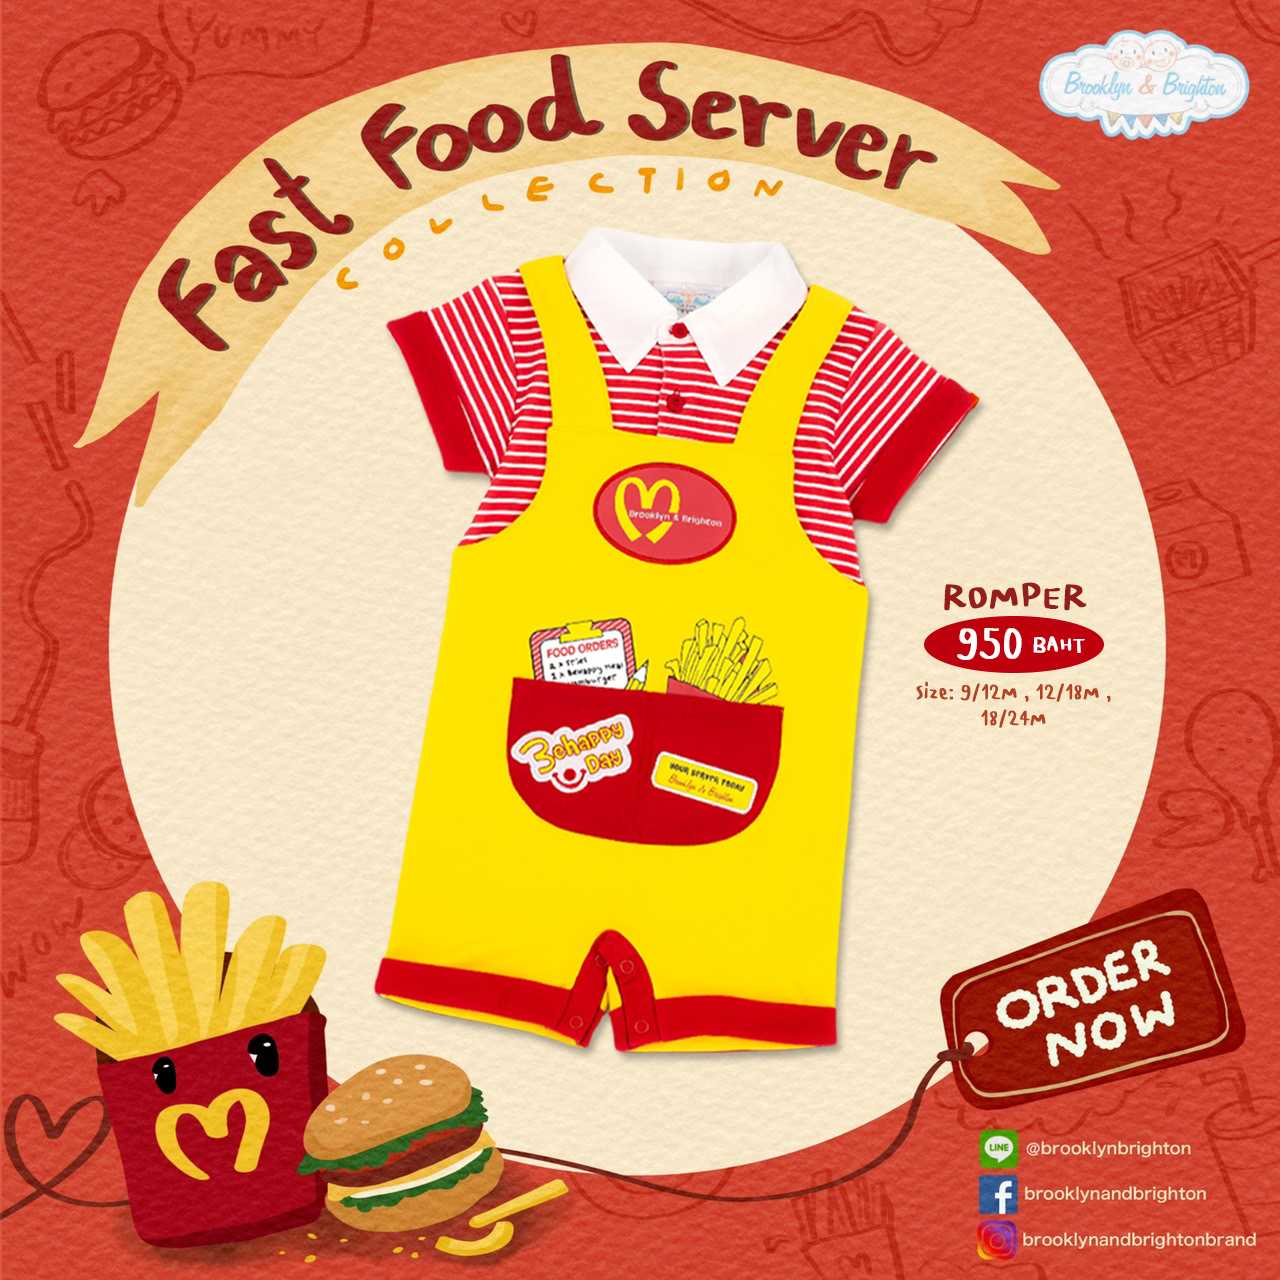 Fast Food Server ชุดอาชีพเด็ก ชุดฟาสฟู๊ดเซฟเวอร์ - Romper (9/12M - 18/24M)